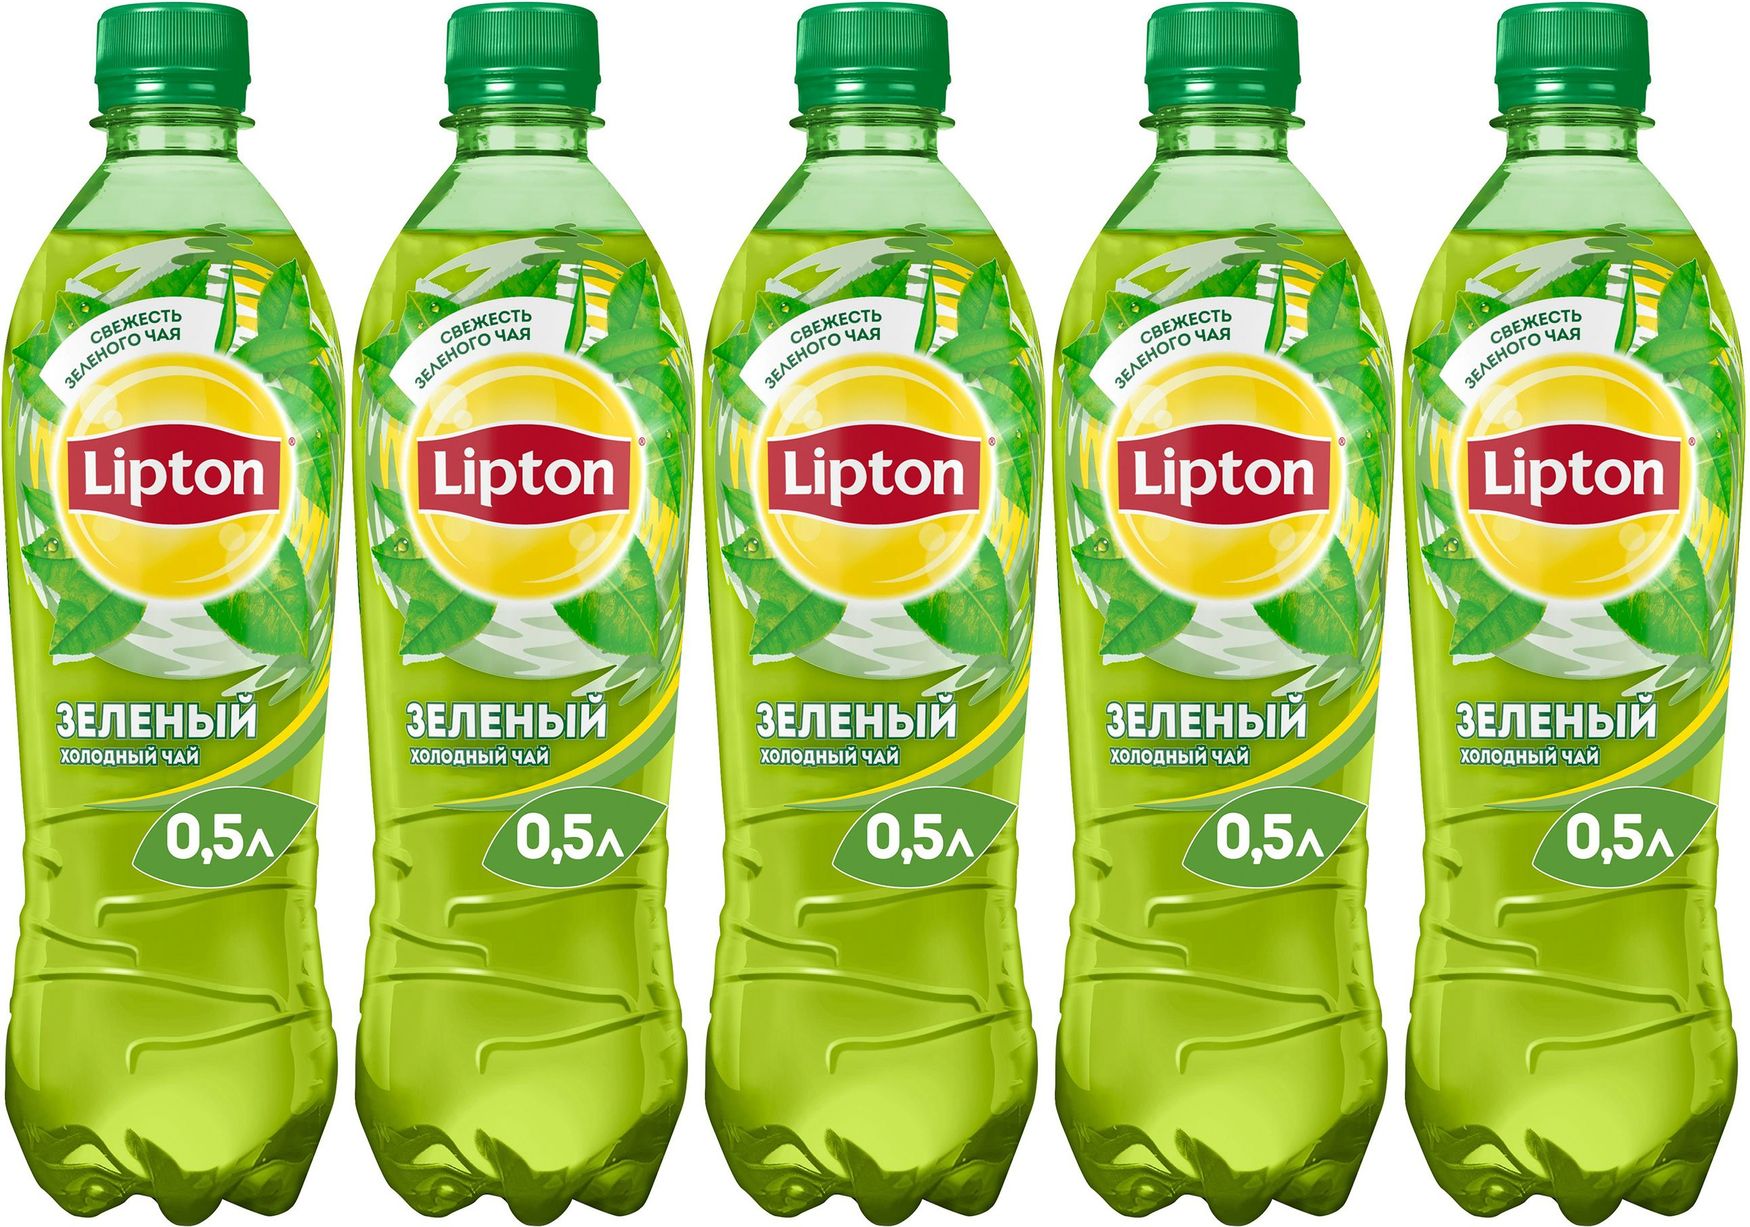 Песня липтон. Липтон 0,5 зеленый. Липтон холодный чай зеленый 0.5. Липтон зеленый сахар. Липтон зеленый сорта.